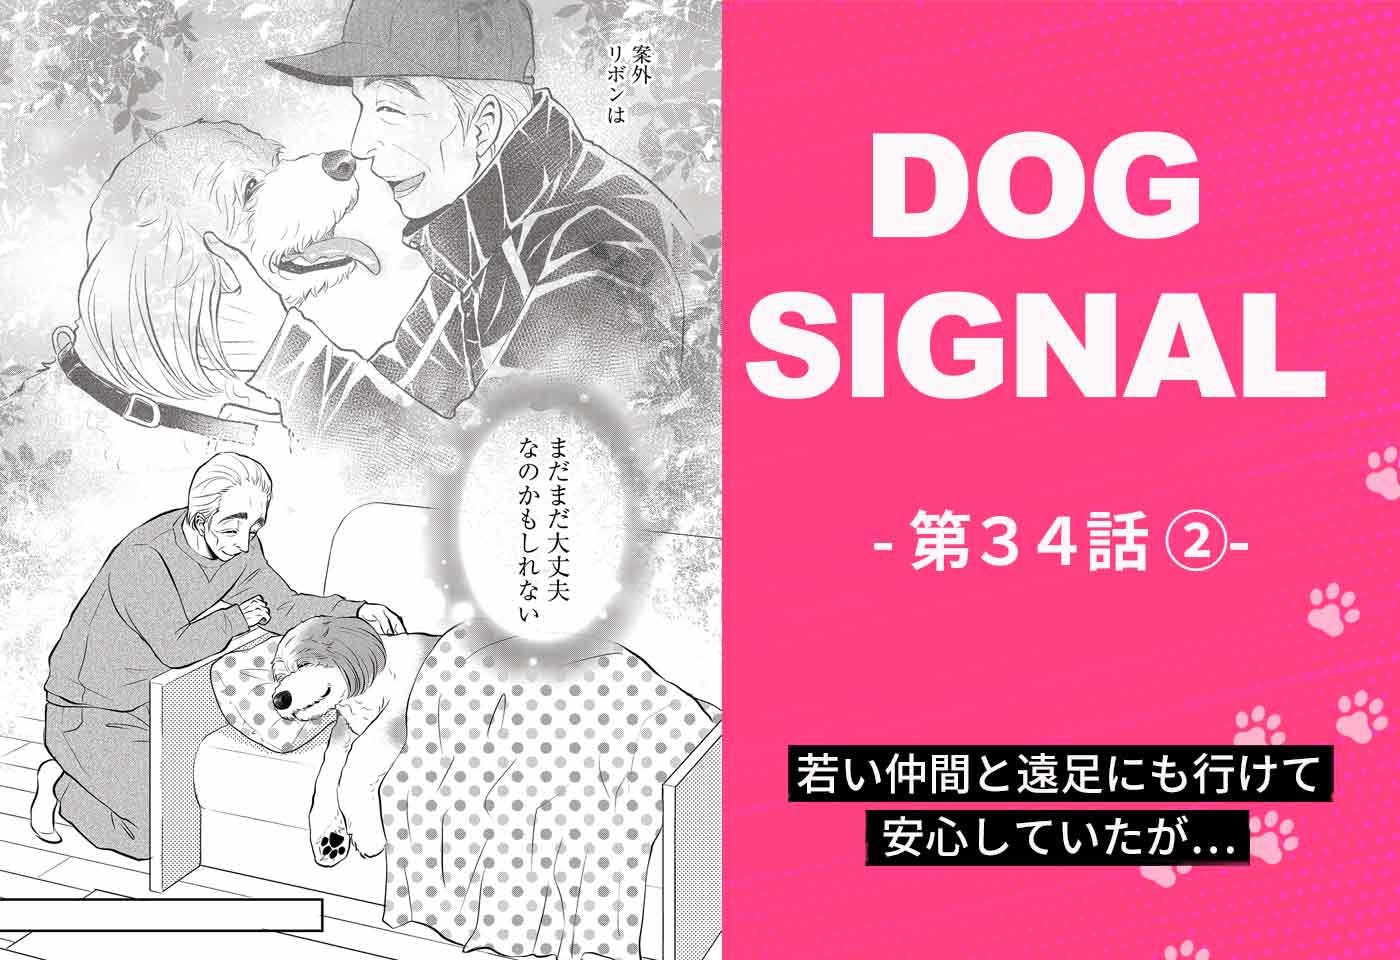 『DOG SIGNAL』34話目2/4　仲間と遠足に行く老犬リボン